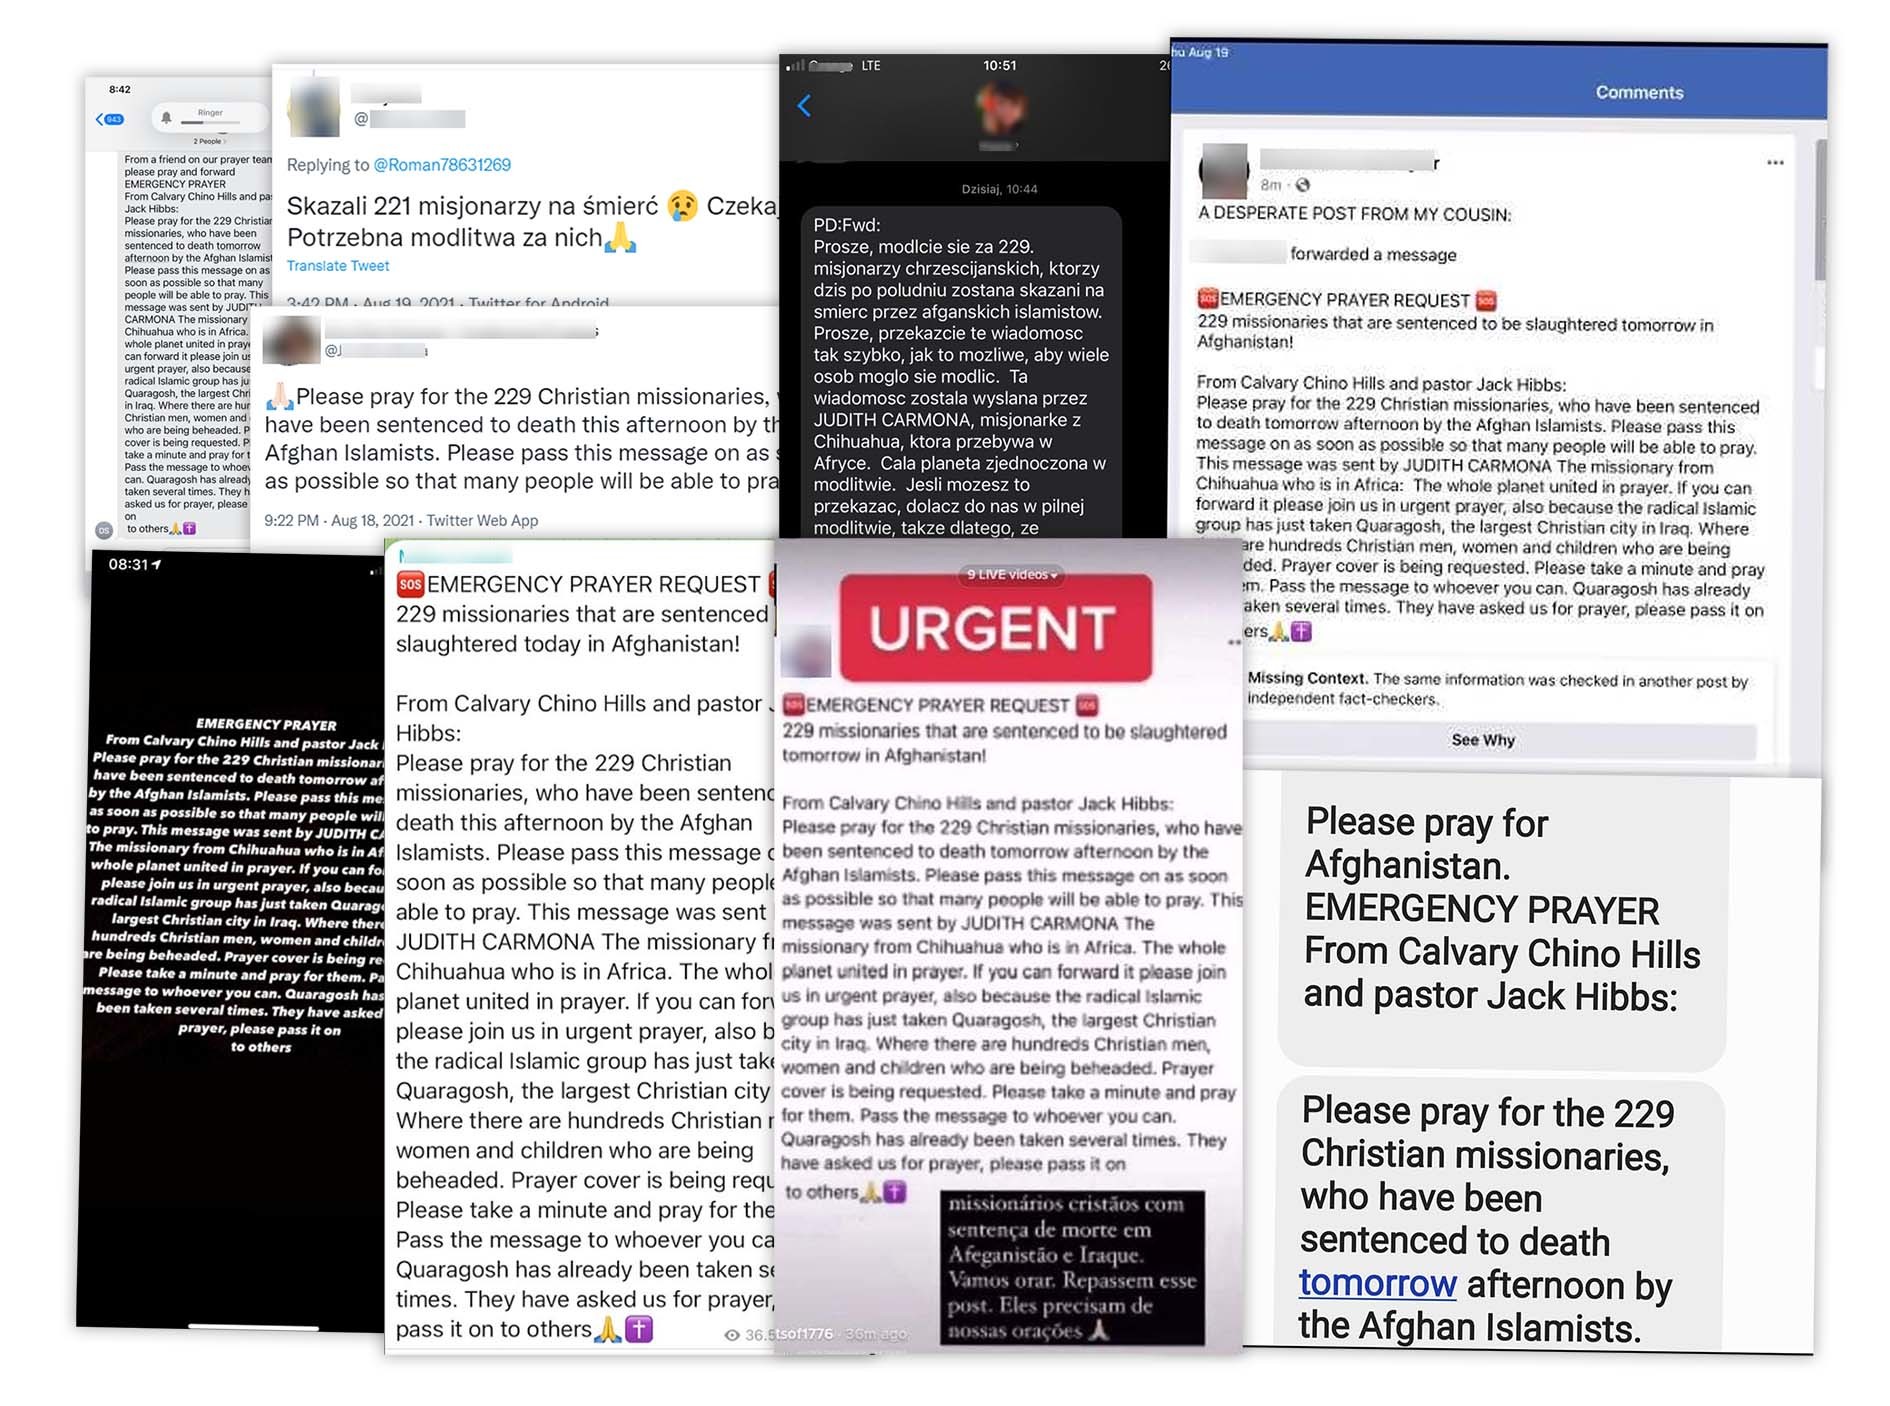 Wiadomości o skazanych na śmierć misjonarzach publikowane są mediach społecznościowych i przesyłane w wiadomościach